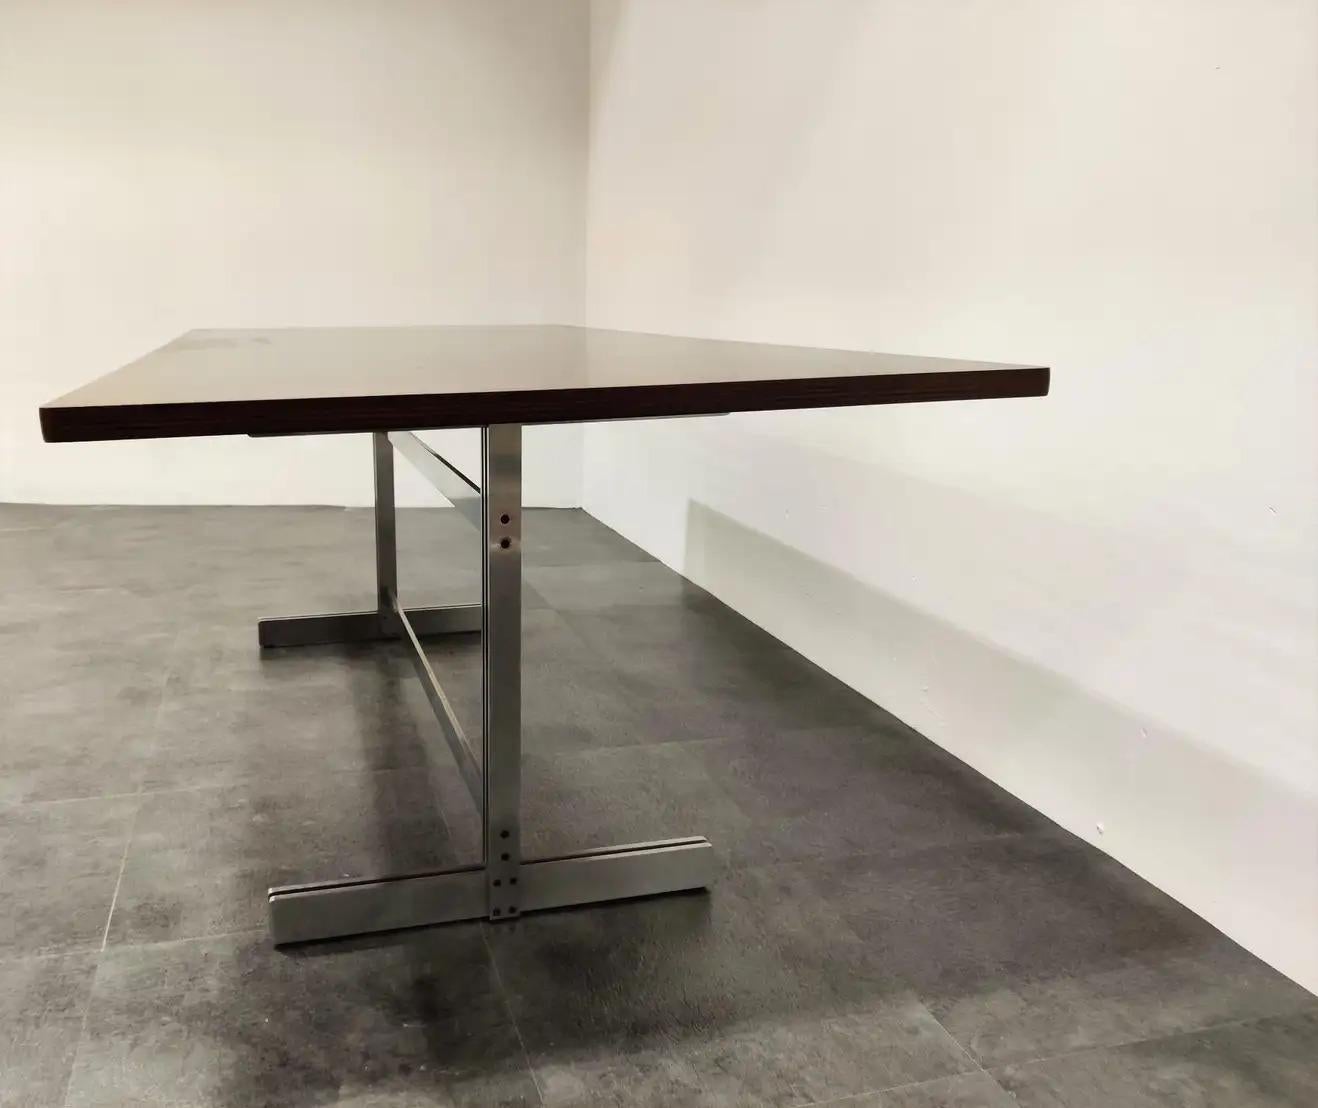 Exklusiver und zeitlos gestalteter Esstisch von Jules Wabbes für Mobilier Universel.

Dieser Tisch hat ein schönes modernistisches Design und verfügt über eine vollständig restaurierte Holzplatte, die auf einem Stahlsockel montiert ist.

Kann